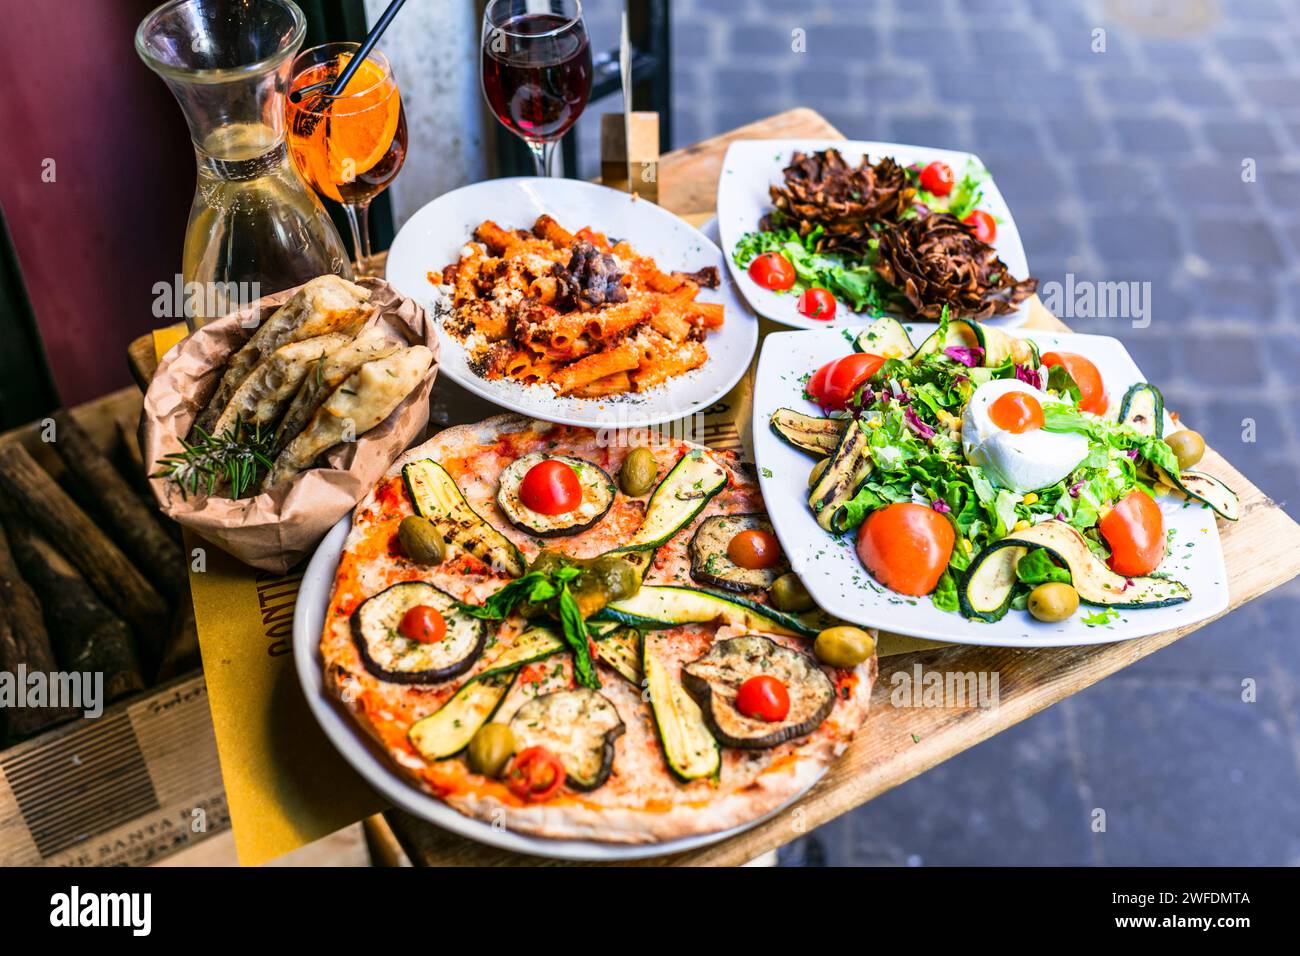 Reisen Sie in Italien, Teil der italienischen Kultur - gesunde mediterrane italienische Küche. Rom Street Restaurants mit einer Auswahl an typischen Pasta, Pizza und Salaten Stockfoto